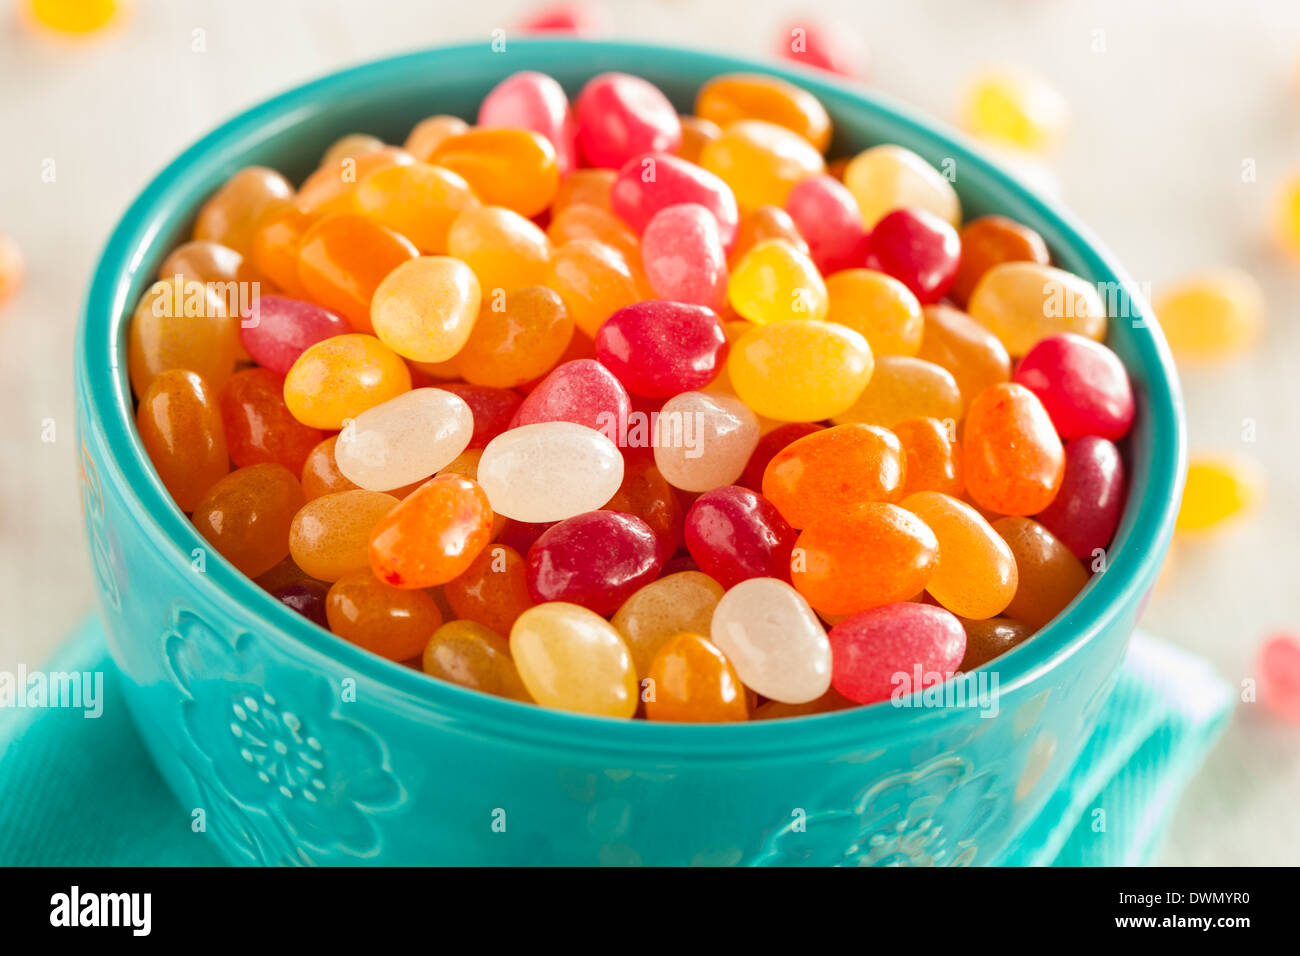 Bunt Jelly Bean Süßigkeiten in eine Schüssel geben Stockfoto